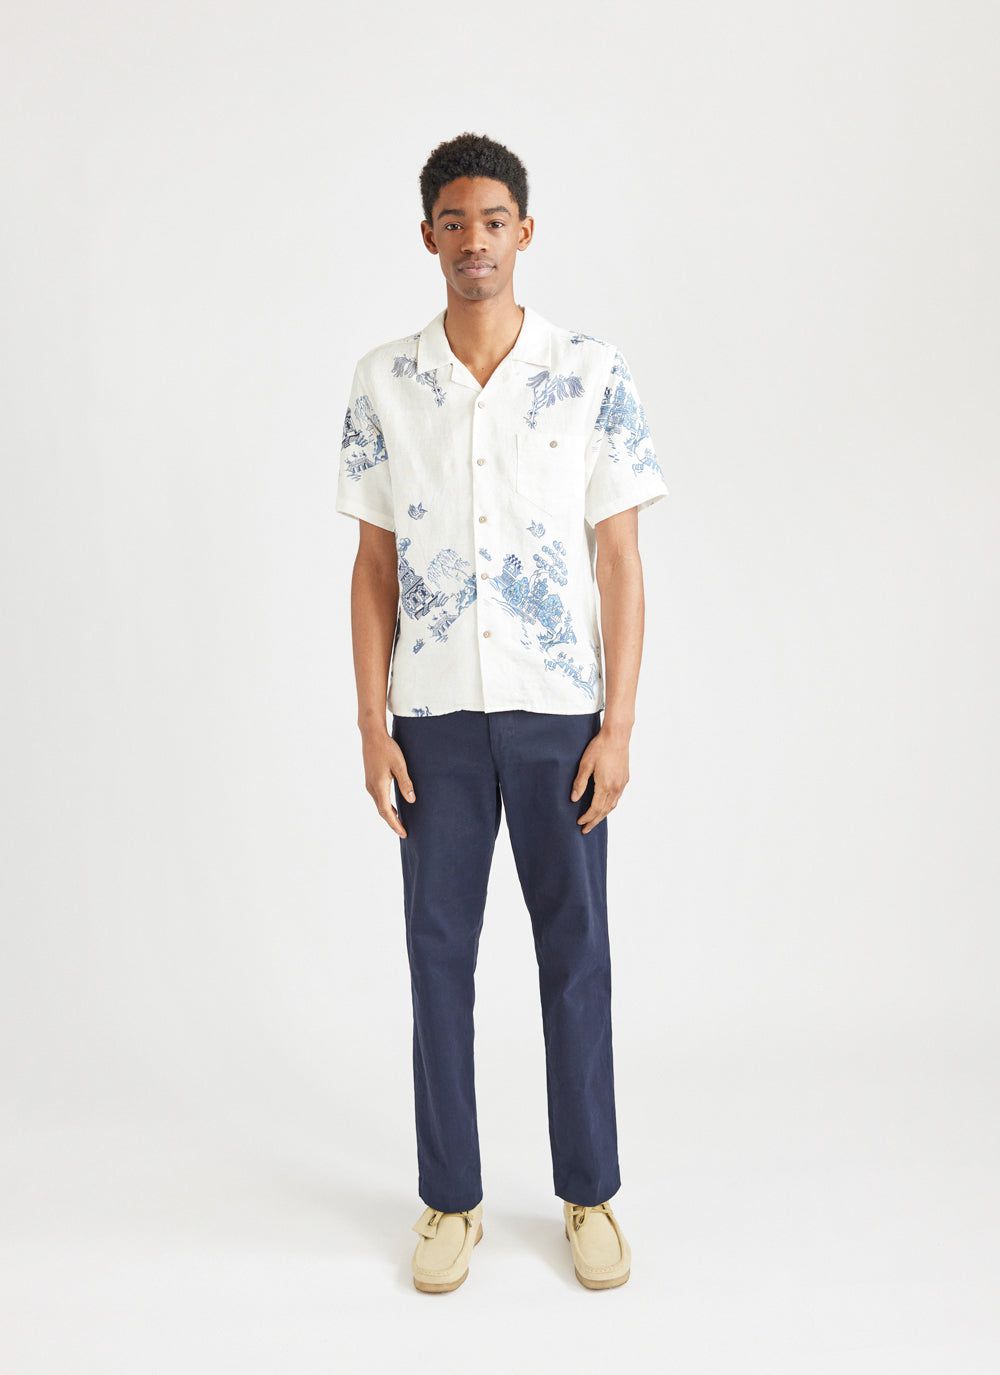 Men's Short Sleeve Linen Shirt | Willow Cuban Collar Shirt | Percival